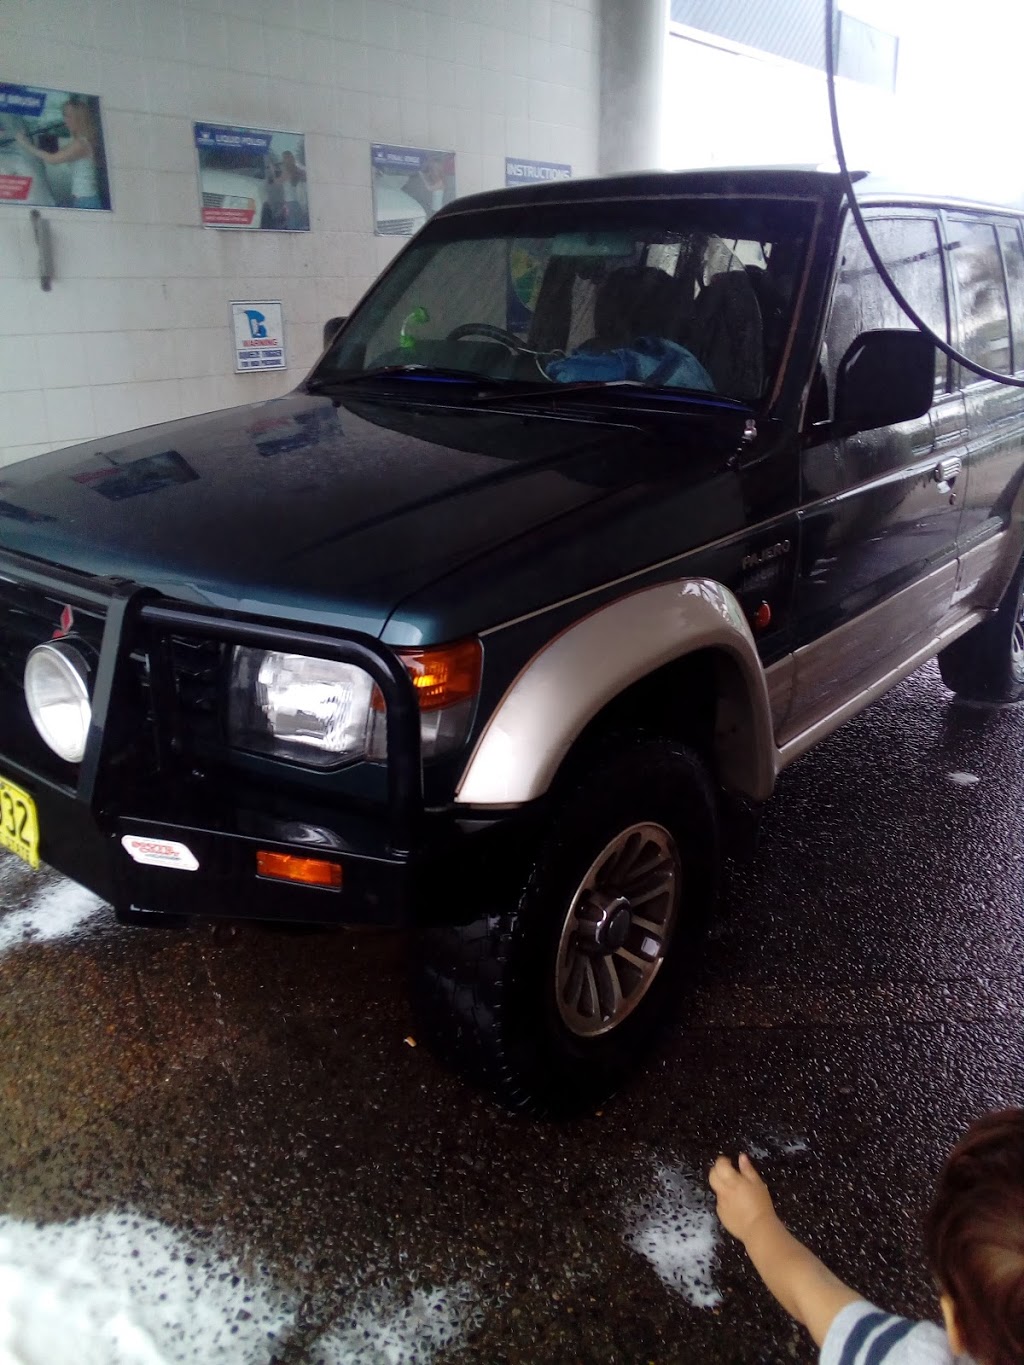 Crown Car Wash | 13 Parramatta Rd, Concord NSW 2137, Australia | Phone: (02) 4353 8686